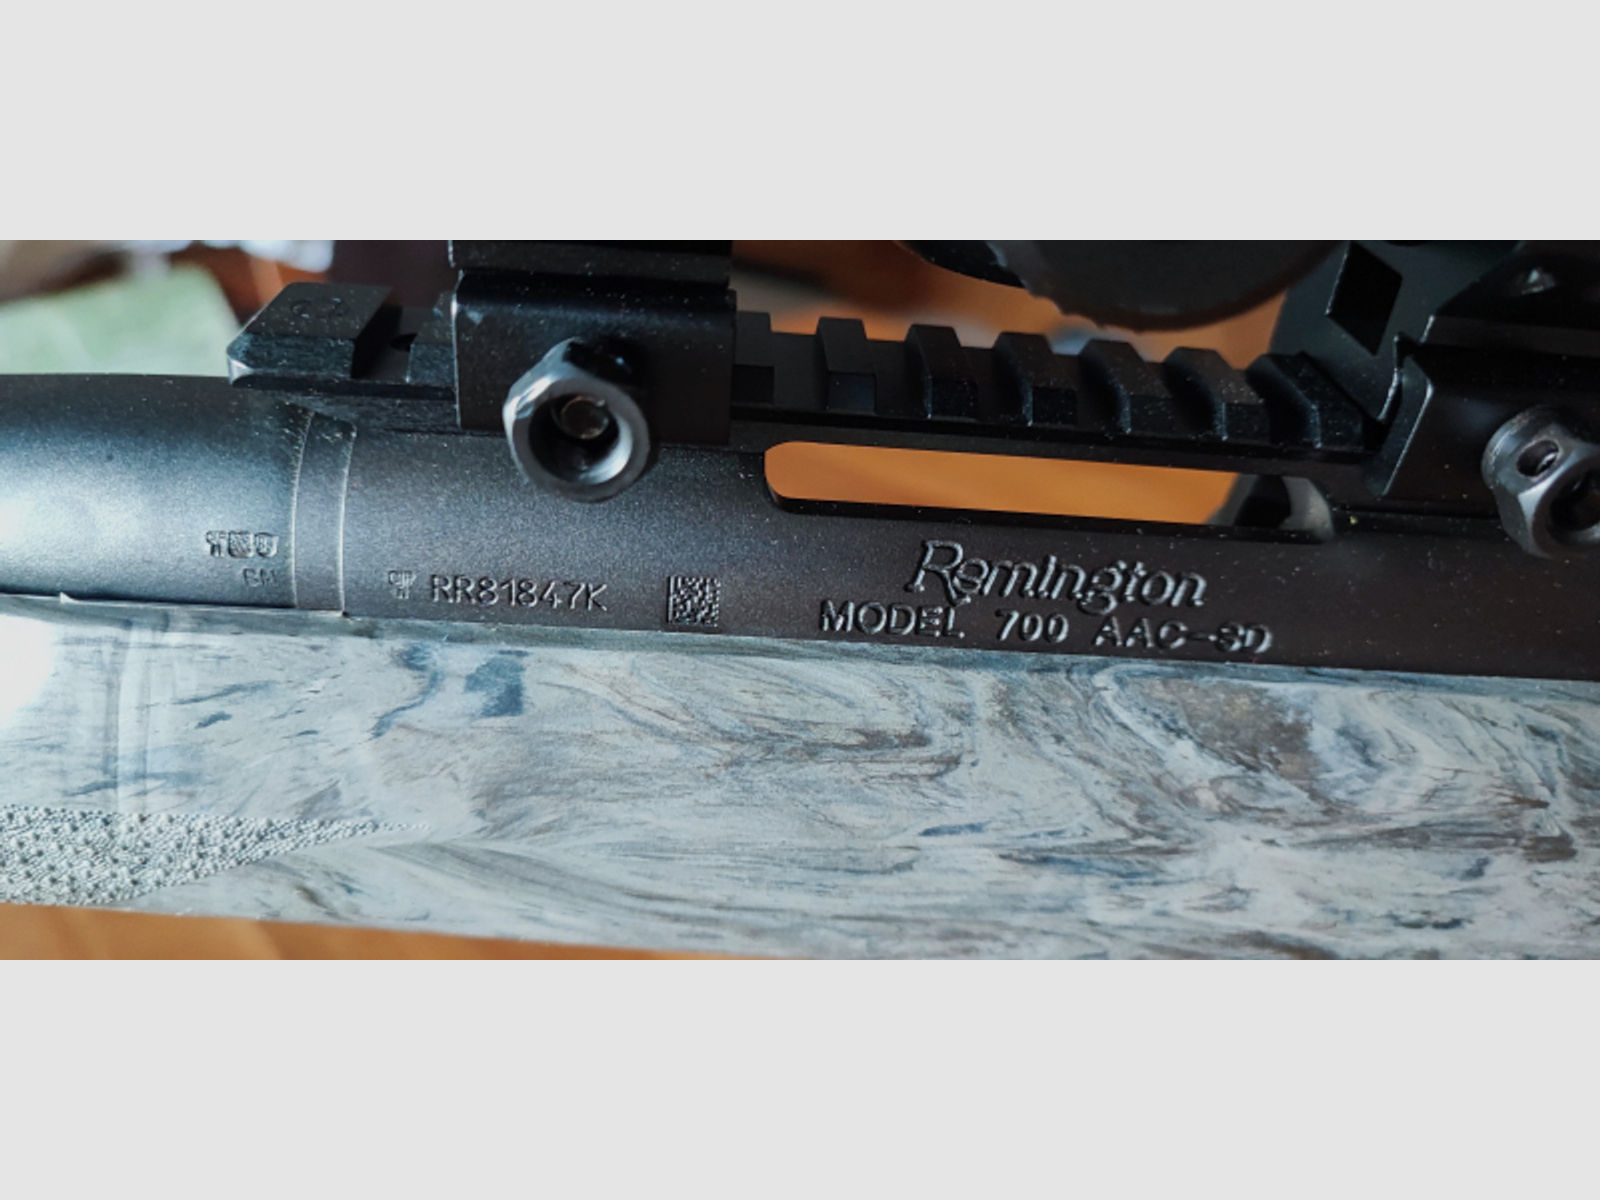 Remington 700 Sniper ACC-SD